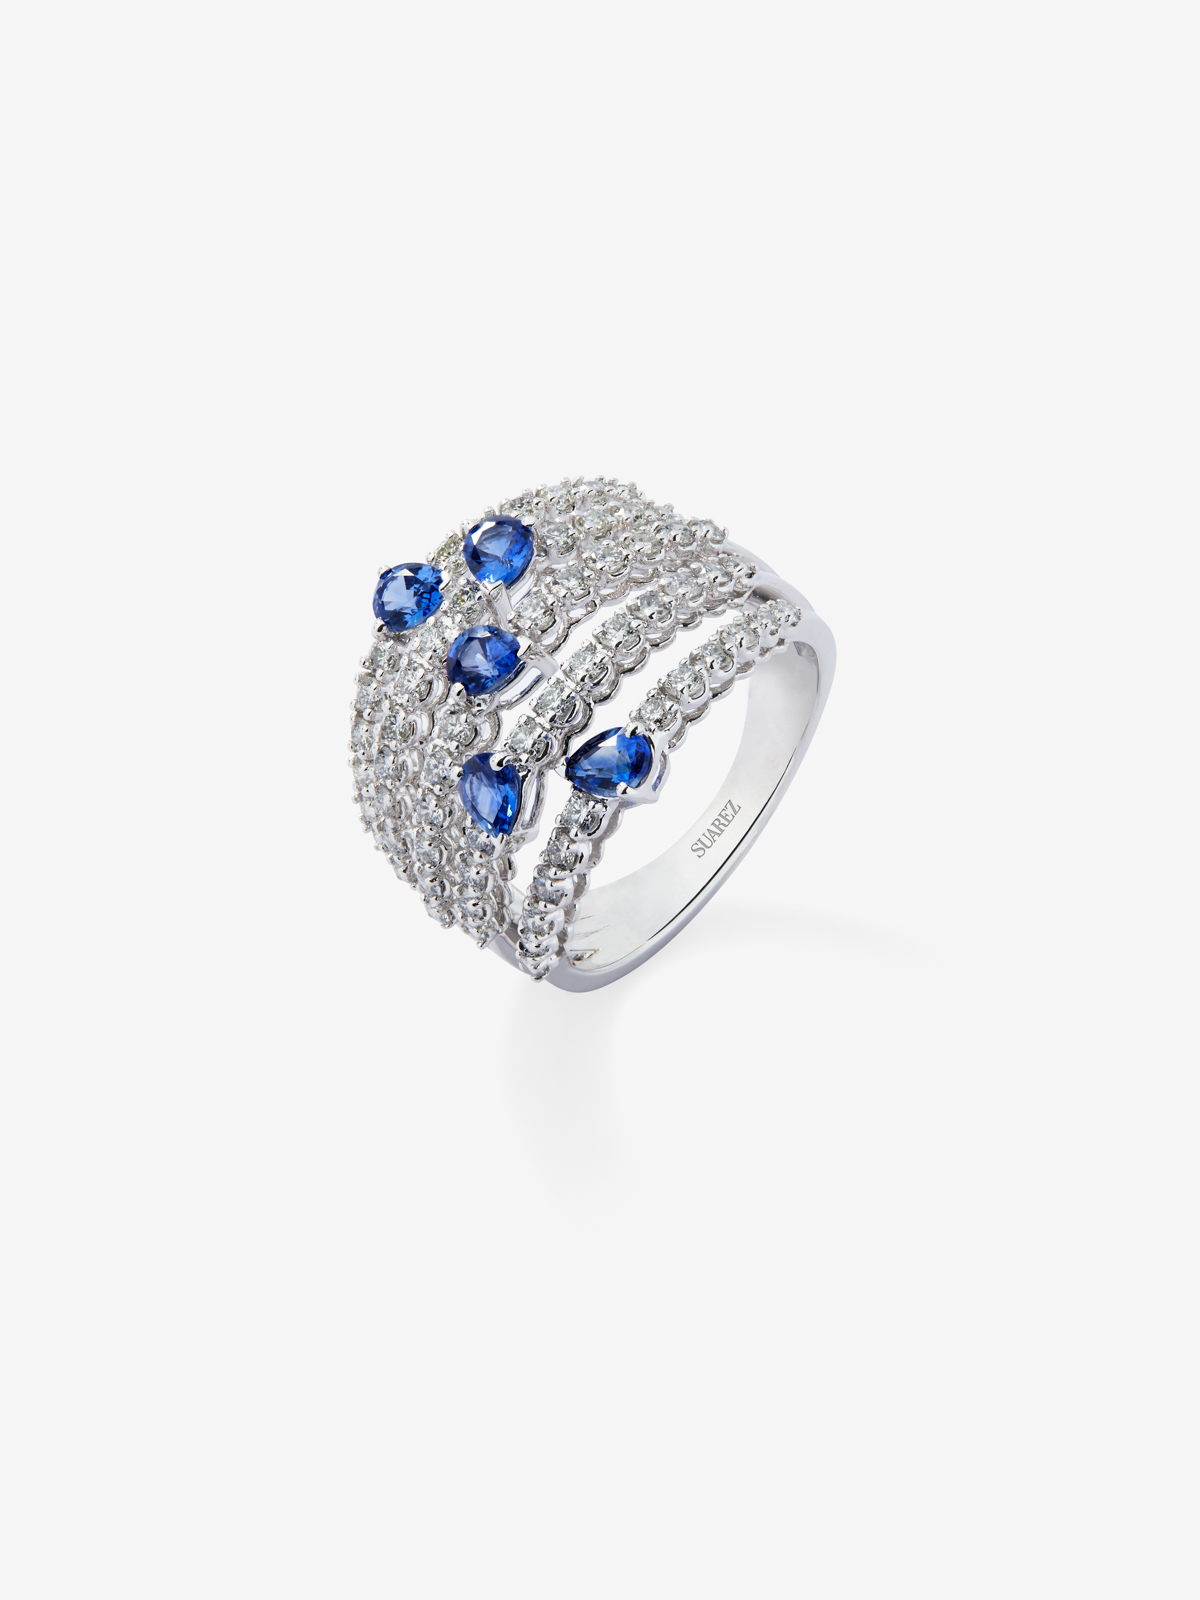 Anillo de oro blanco de 18K con diamantes blancos en talla brillante de 1 cts y zafiros azules en talla pera de 1,13 cts